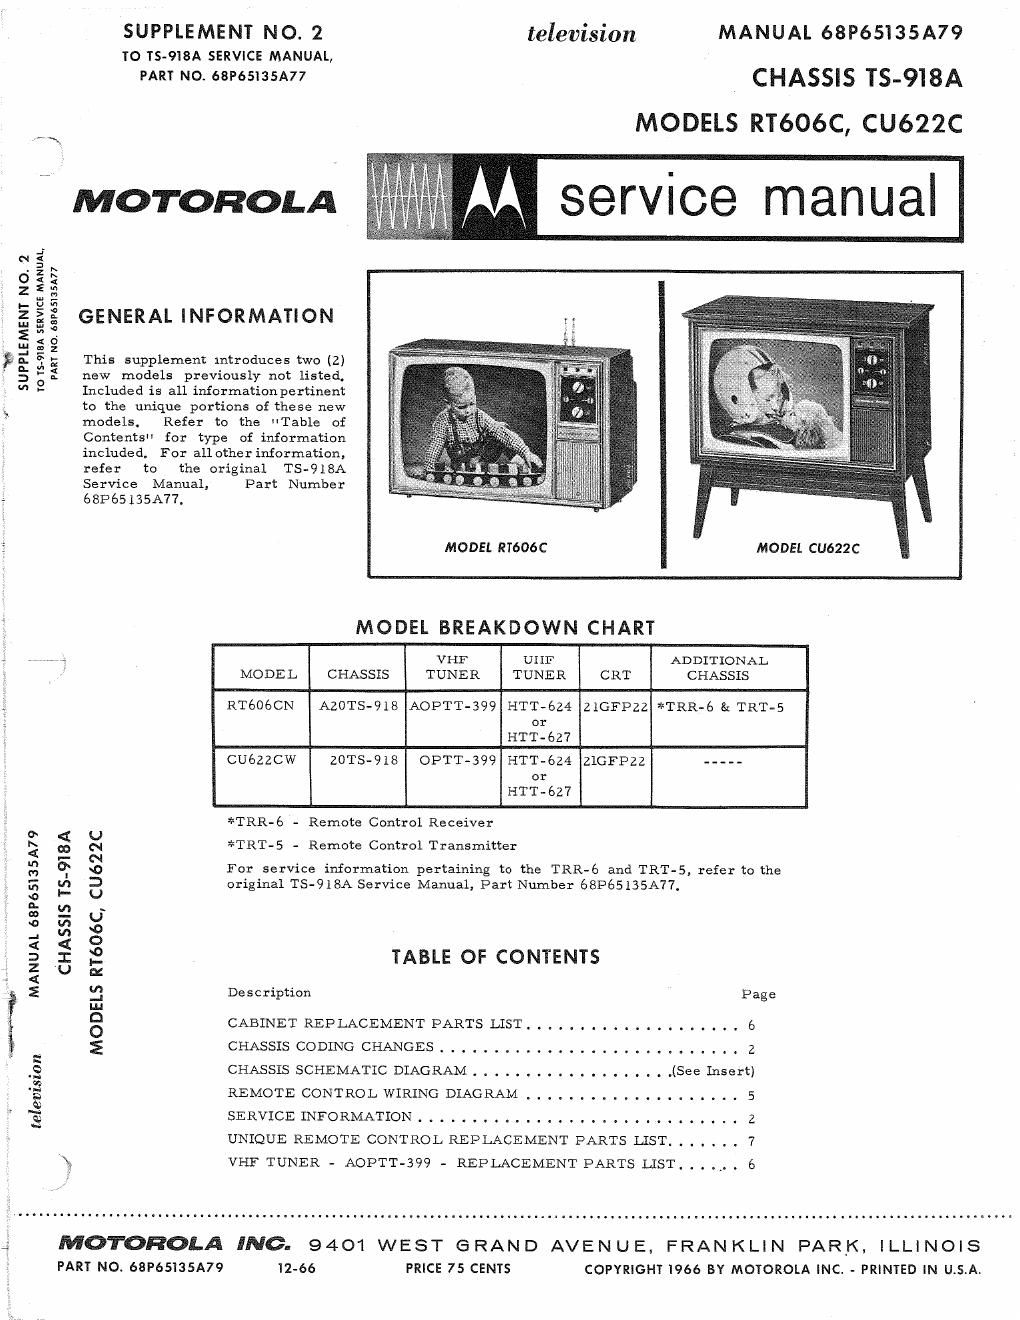 motorola cu 622 c service manual